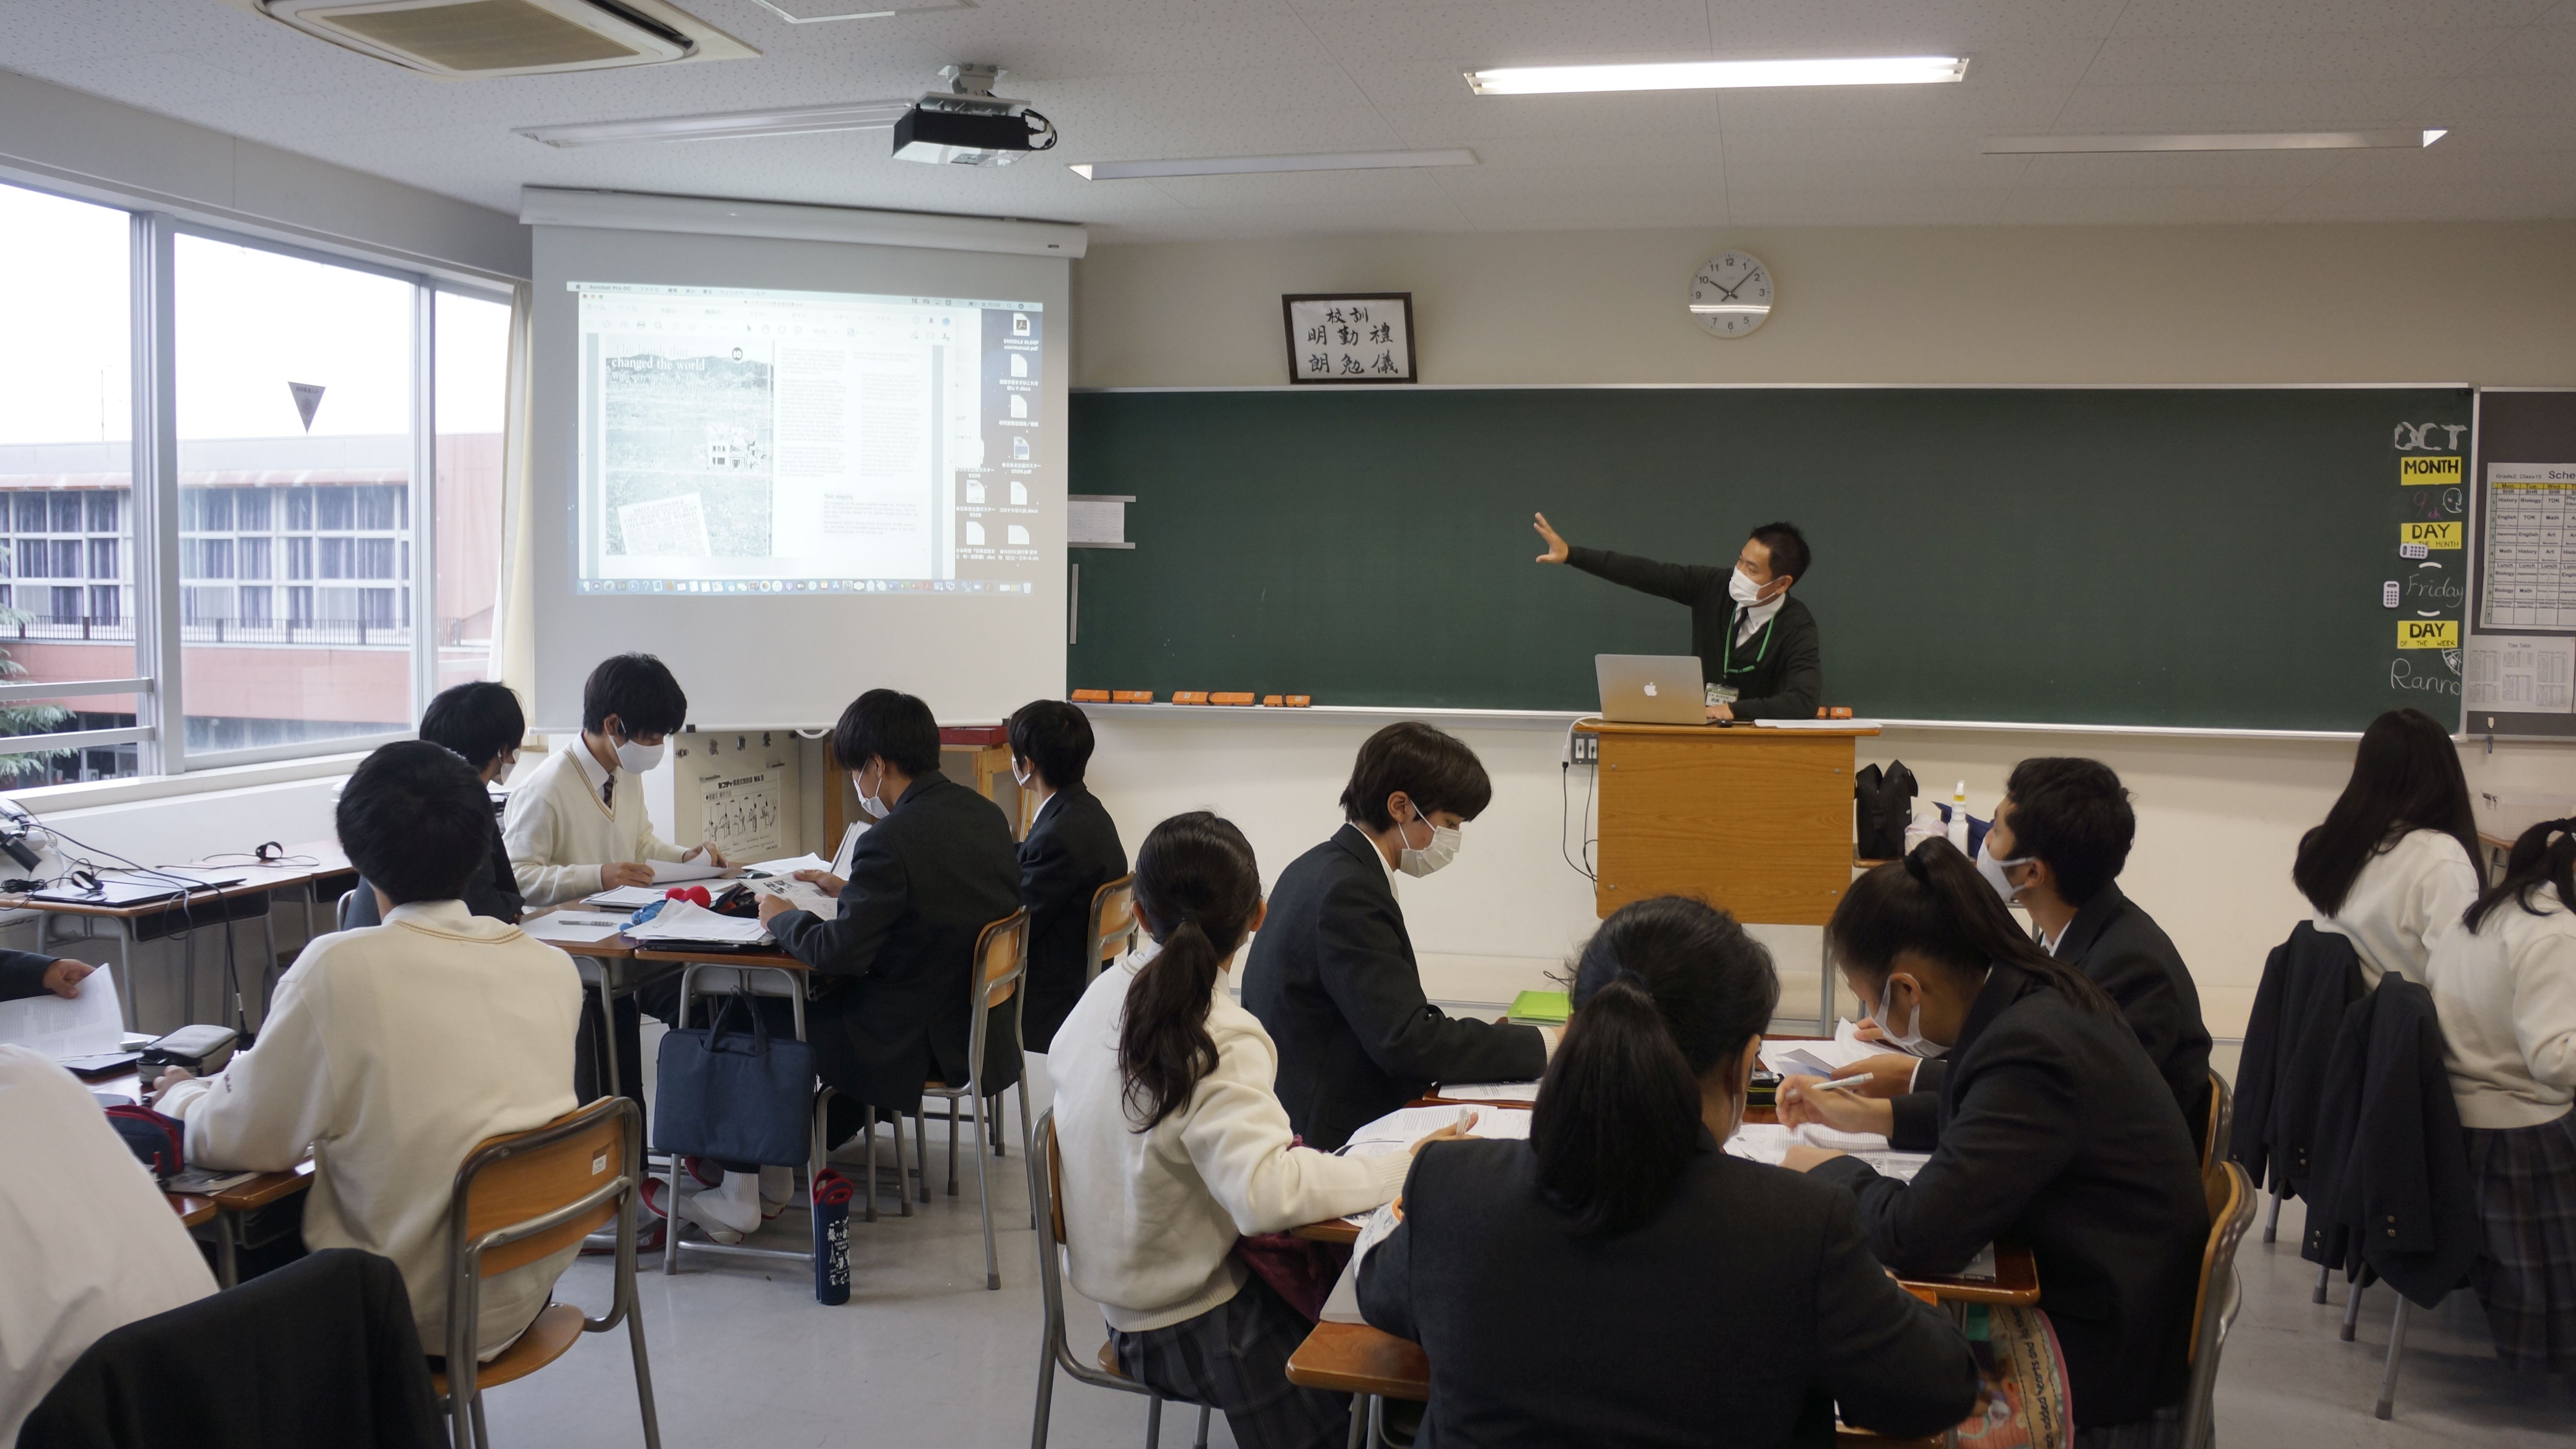 日本で受けられる世界基準の授業 昌平高校 杉戸町 高校レポ よみうり進学メディア